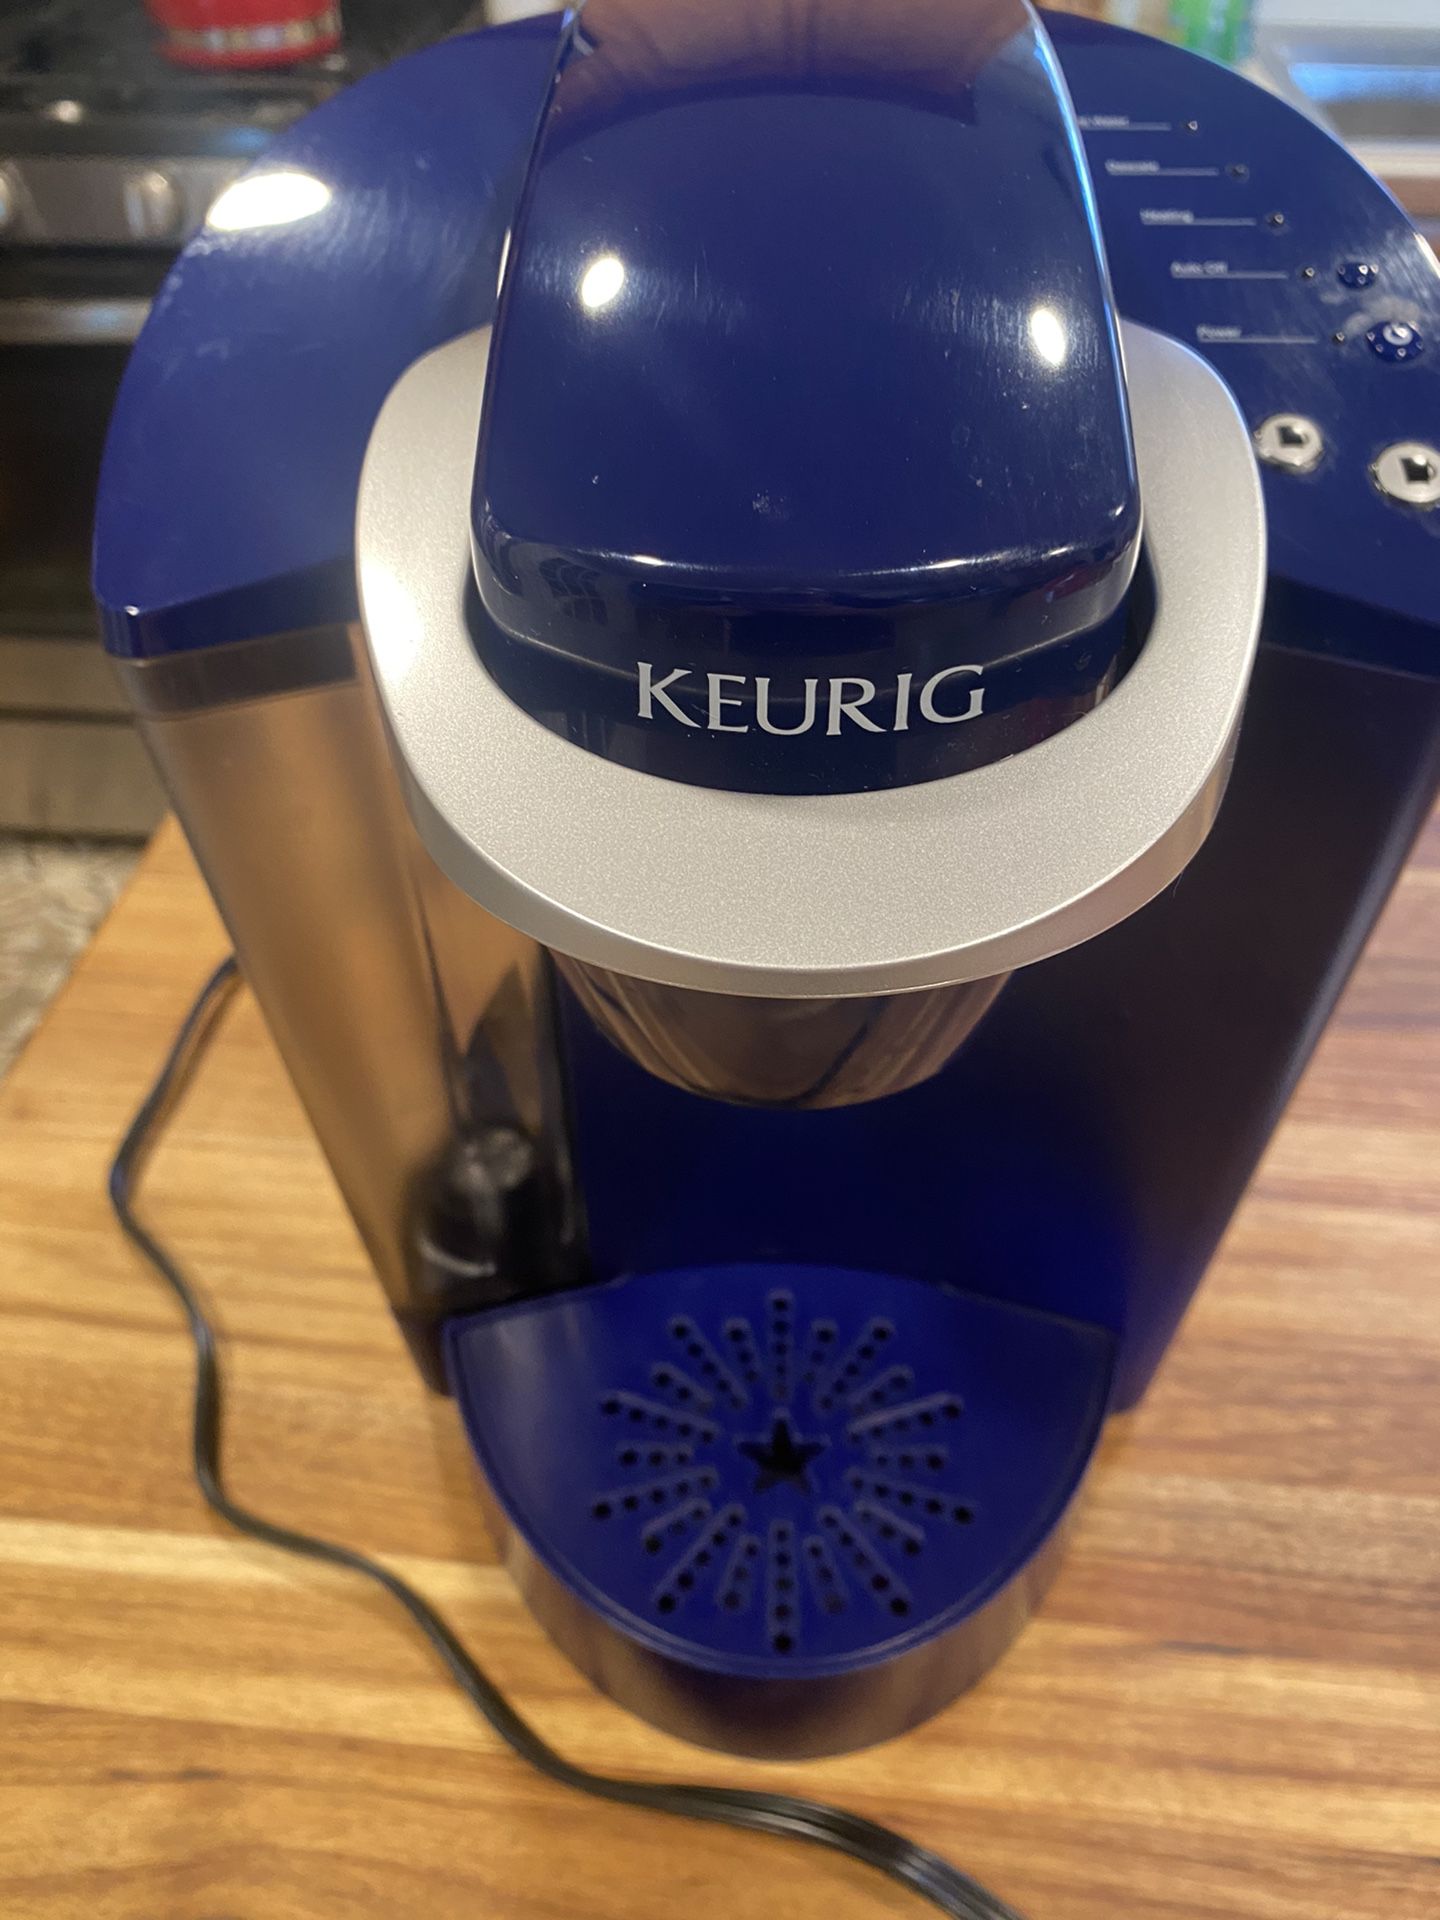 KEURIG Coffee maker.